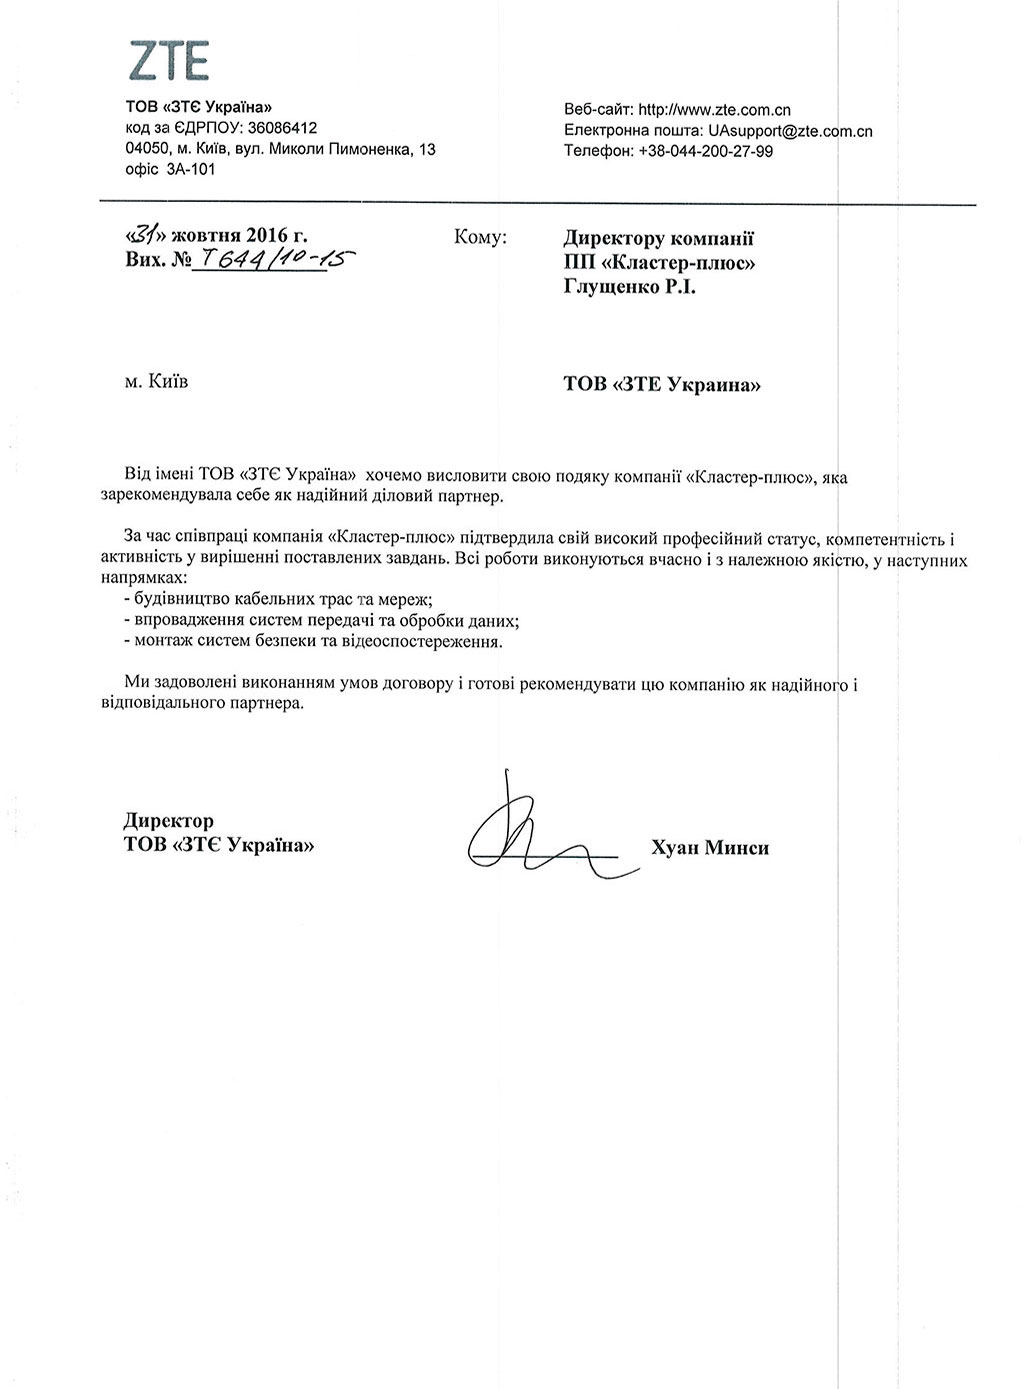 Рекомендательное письмо от ООО «ЗТЕ Украина»